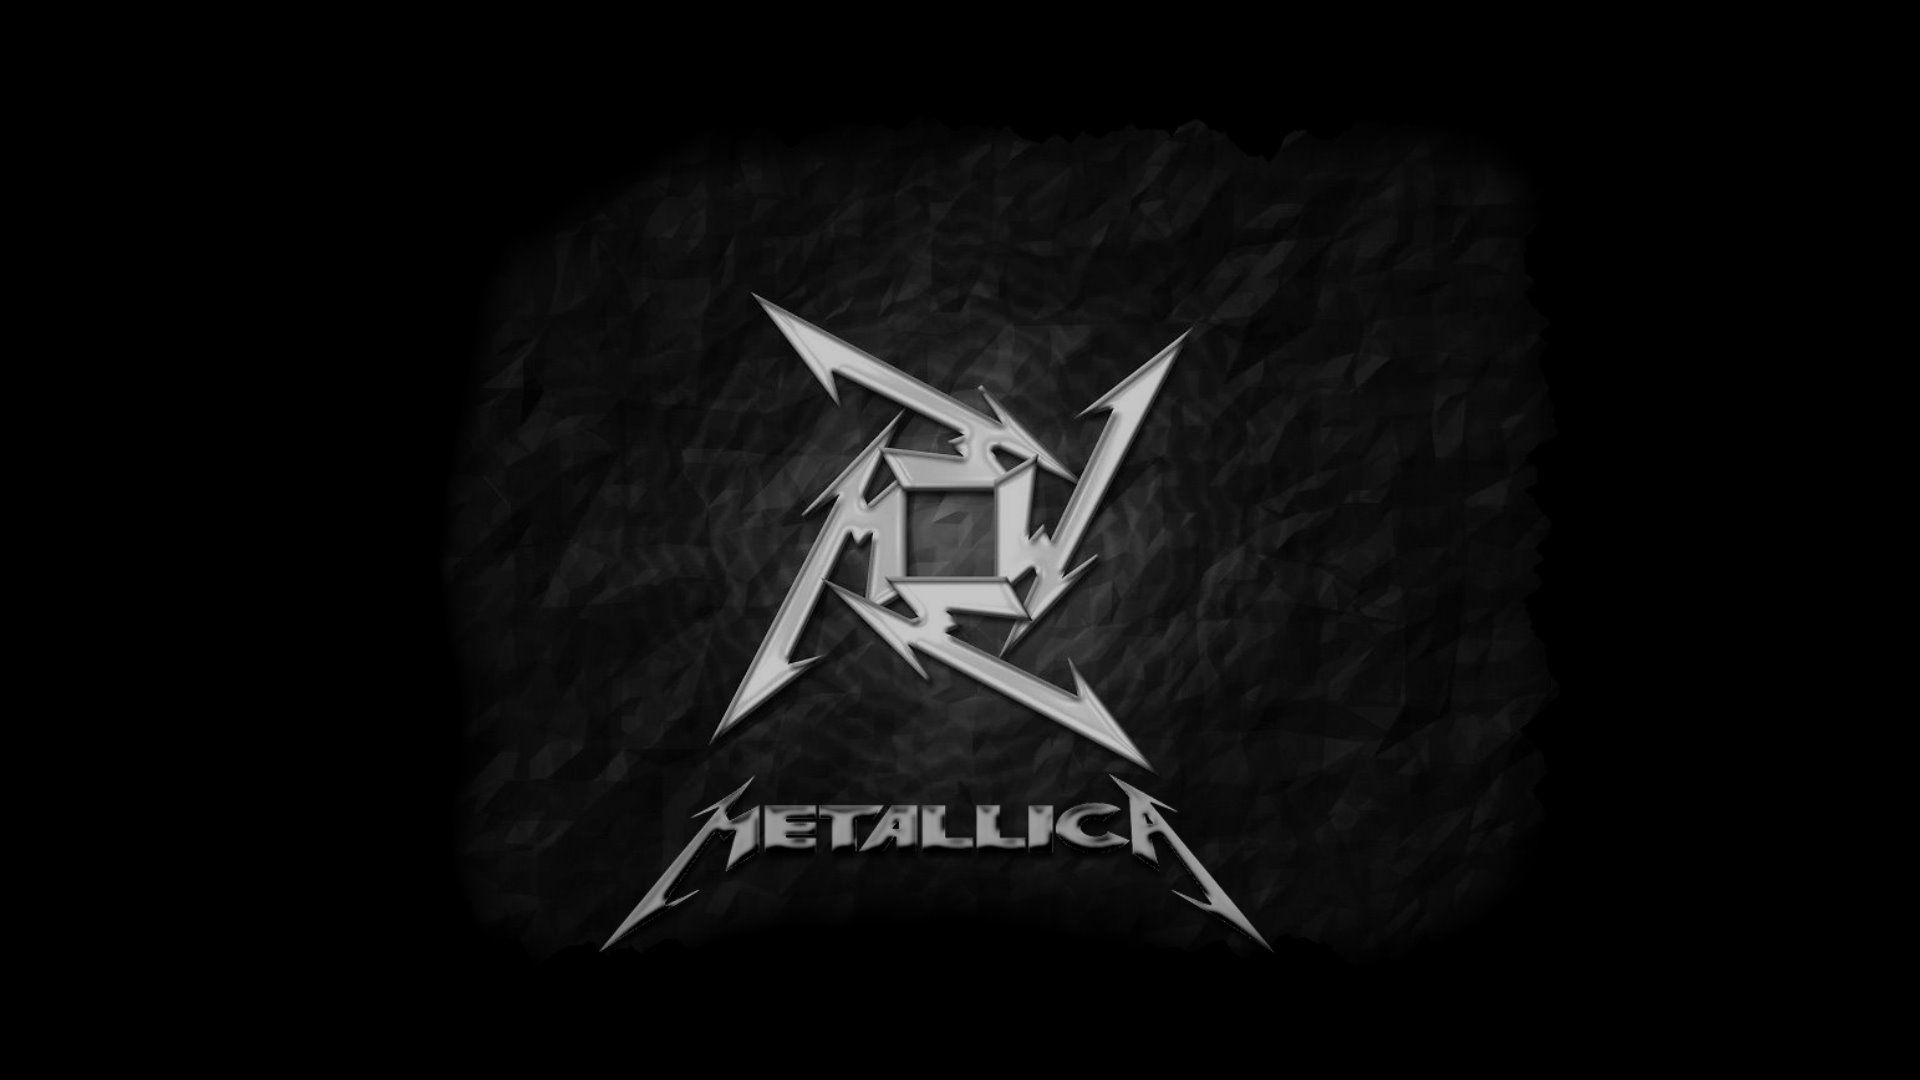 Metallica Wallpaper Widescreen HD 1080p Widescreen With Photos Of